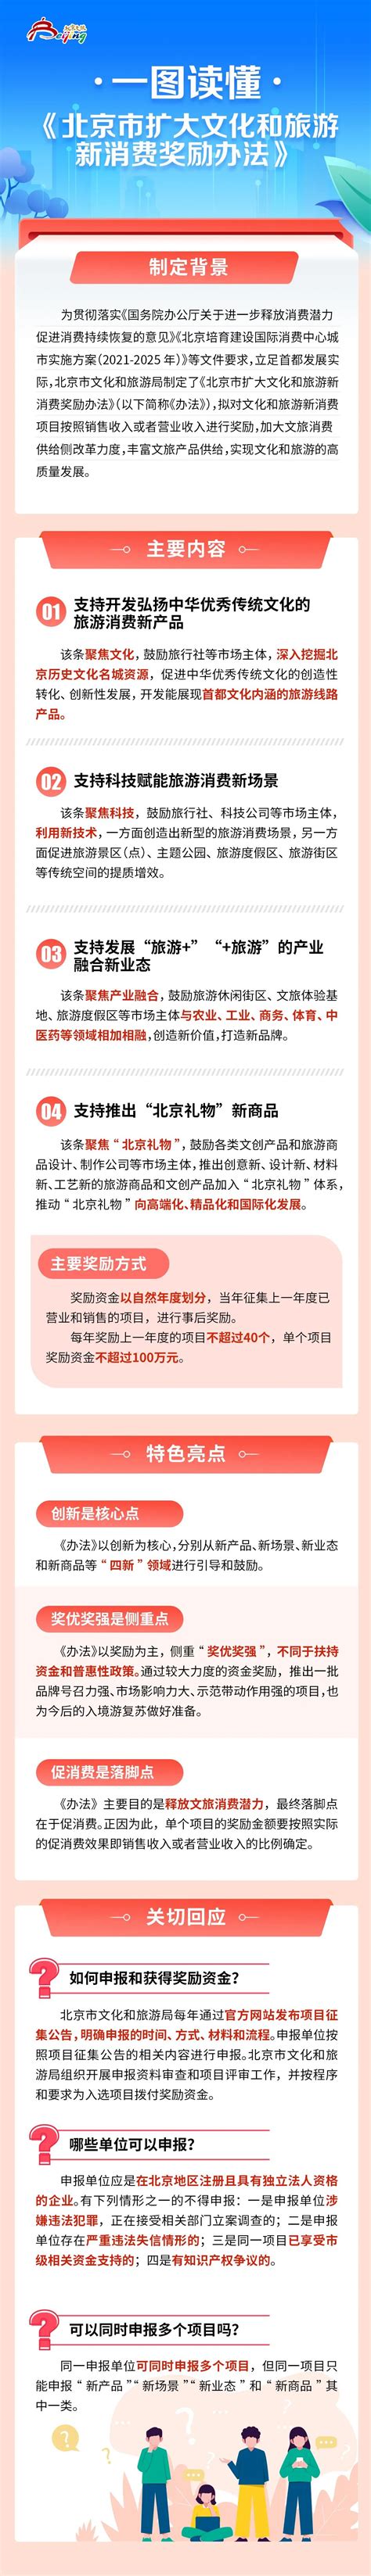 北京市首个企业投诉举报信息公示平台正式启动（3）-千龙网·中国首都网